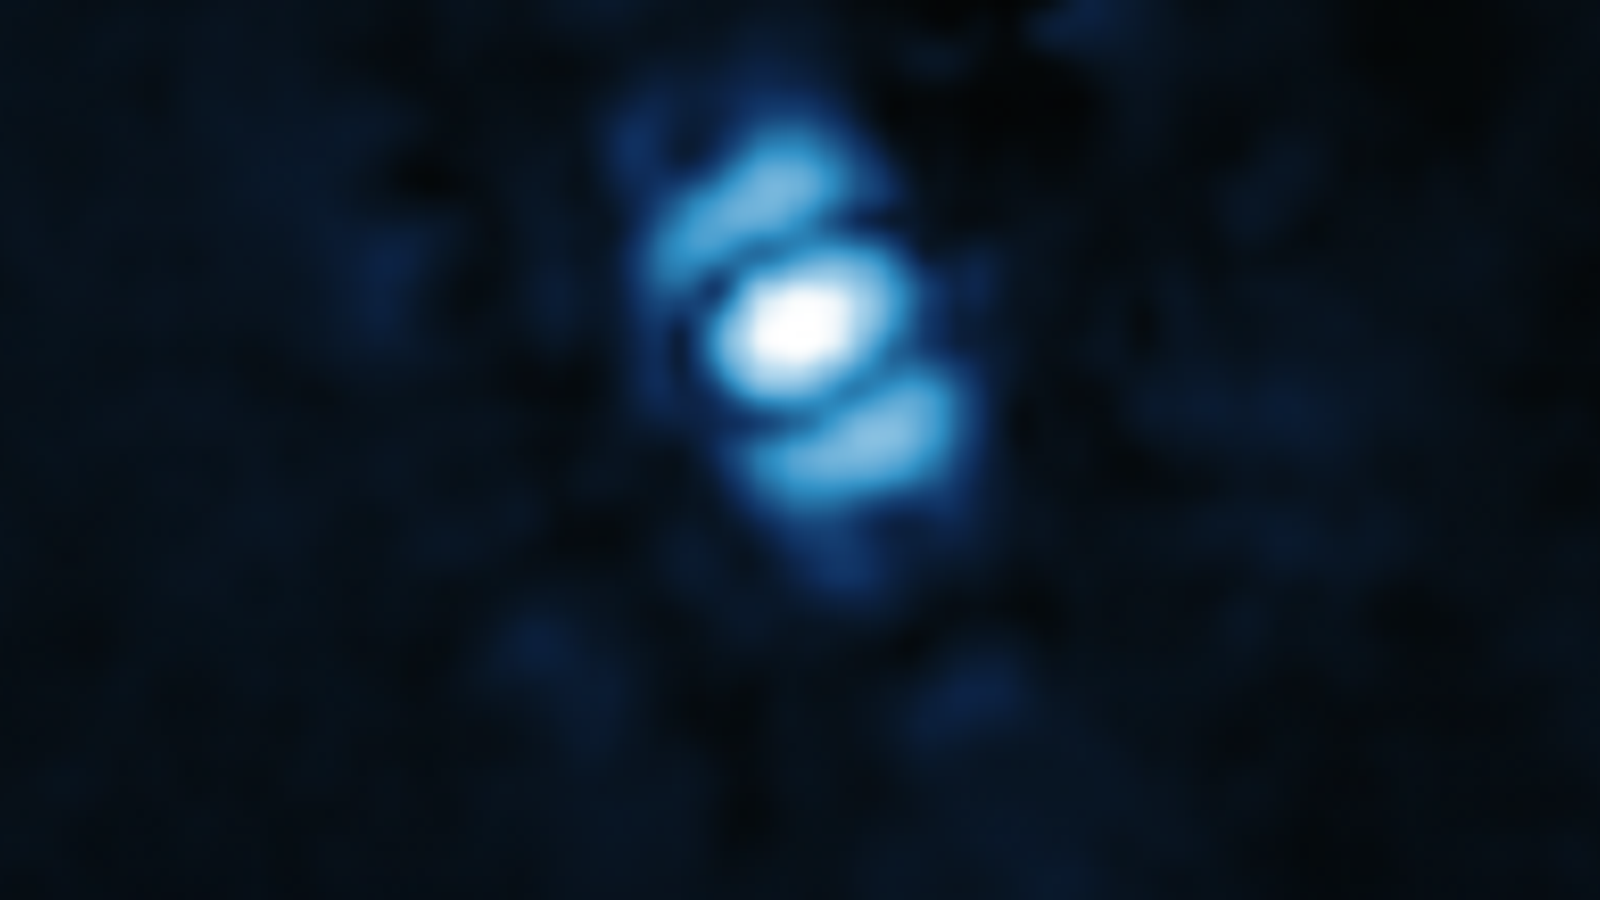 Le télescope spatial James Webb de la NASA prend sa première image d’une exoplanète |  actualités scientifiques et techniques